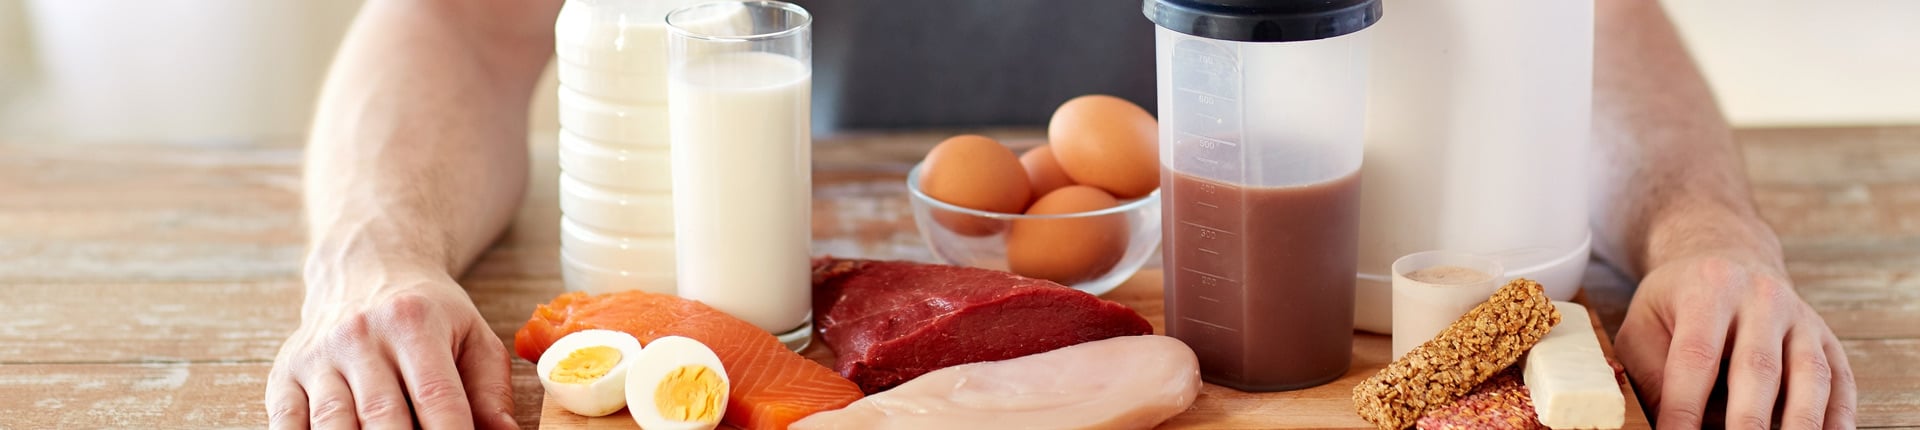 Produkty spożywcze zawierające białko. Najlepsze źródła białka w jedzeniu